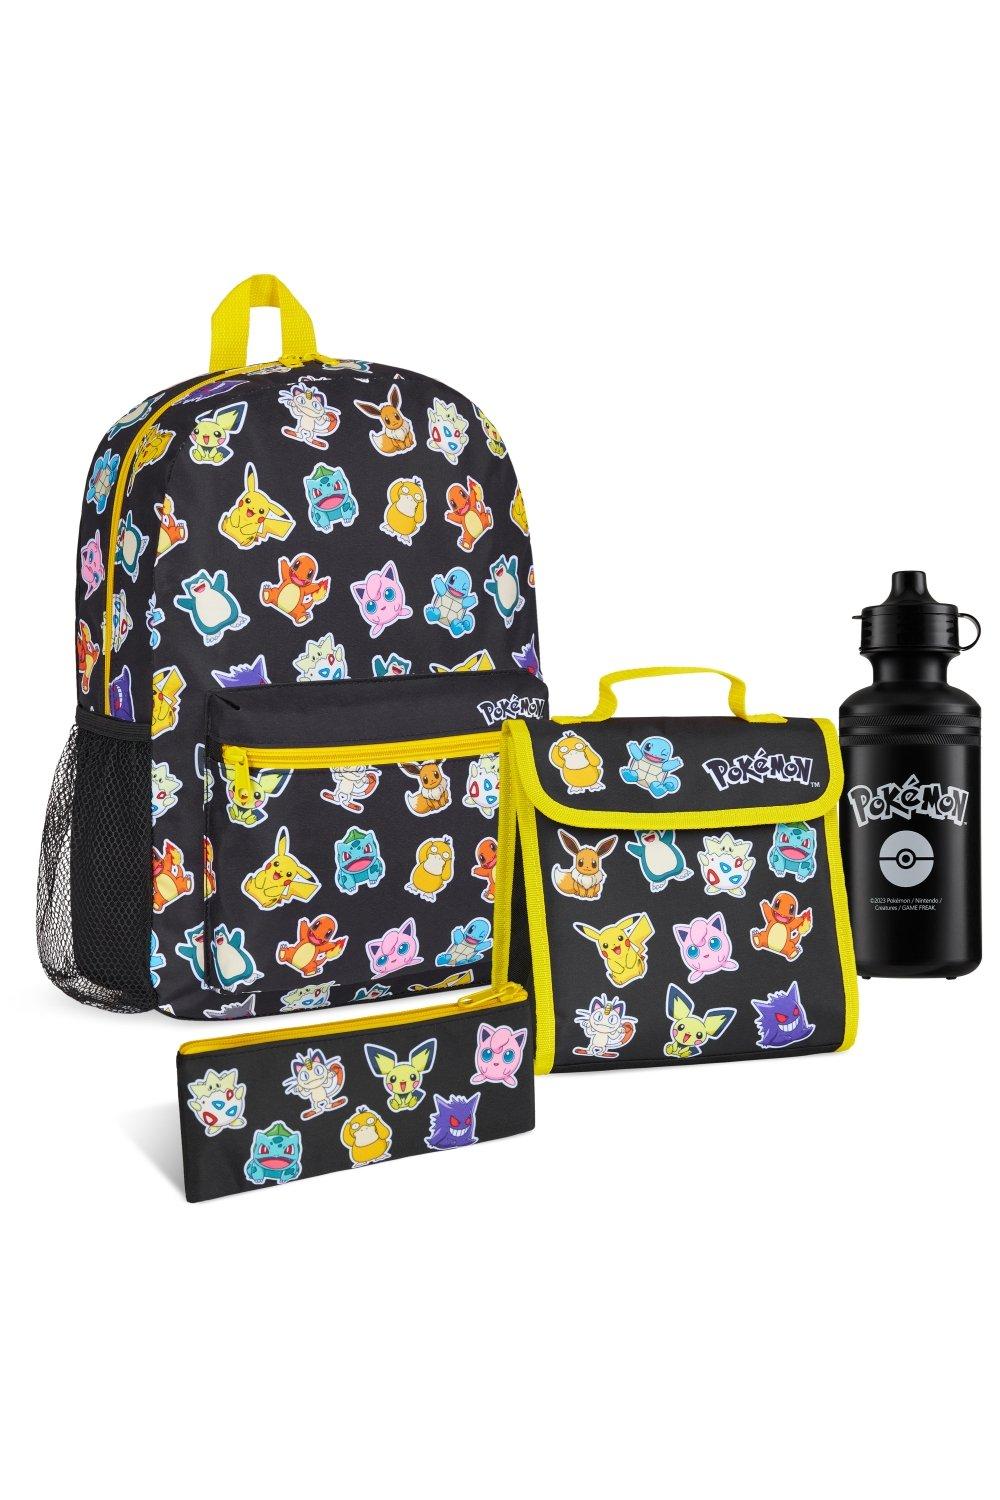 Рюкзак AOP, набор из 4 предметов: рюкзак, сумка для обеда, пенал, бутылка с водой Pokemon, мультиколор детский рюкзак в kidergarten милый школьный рюкзак для мальчиков и девочек школьные сумки с мультипликационным рисунком детский подарок школь